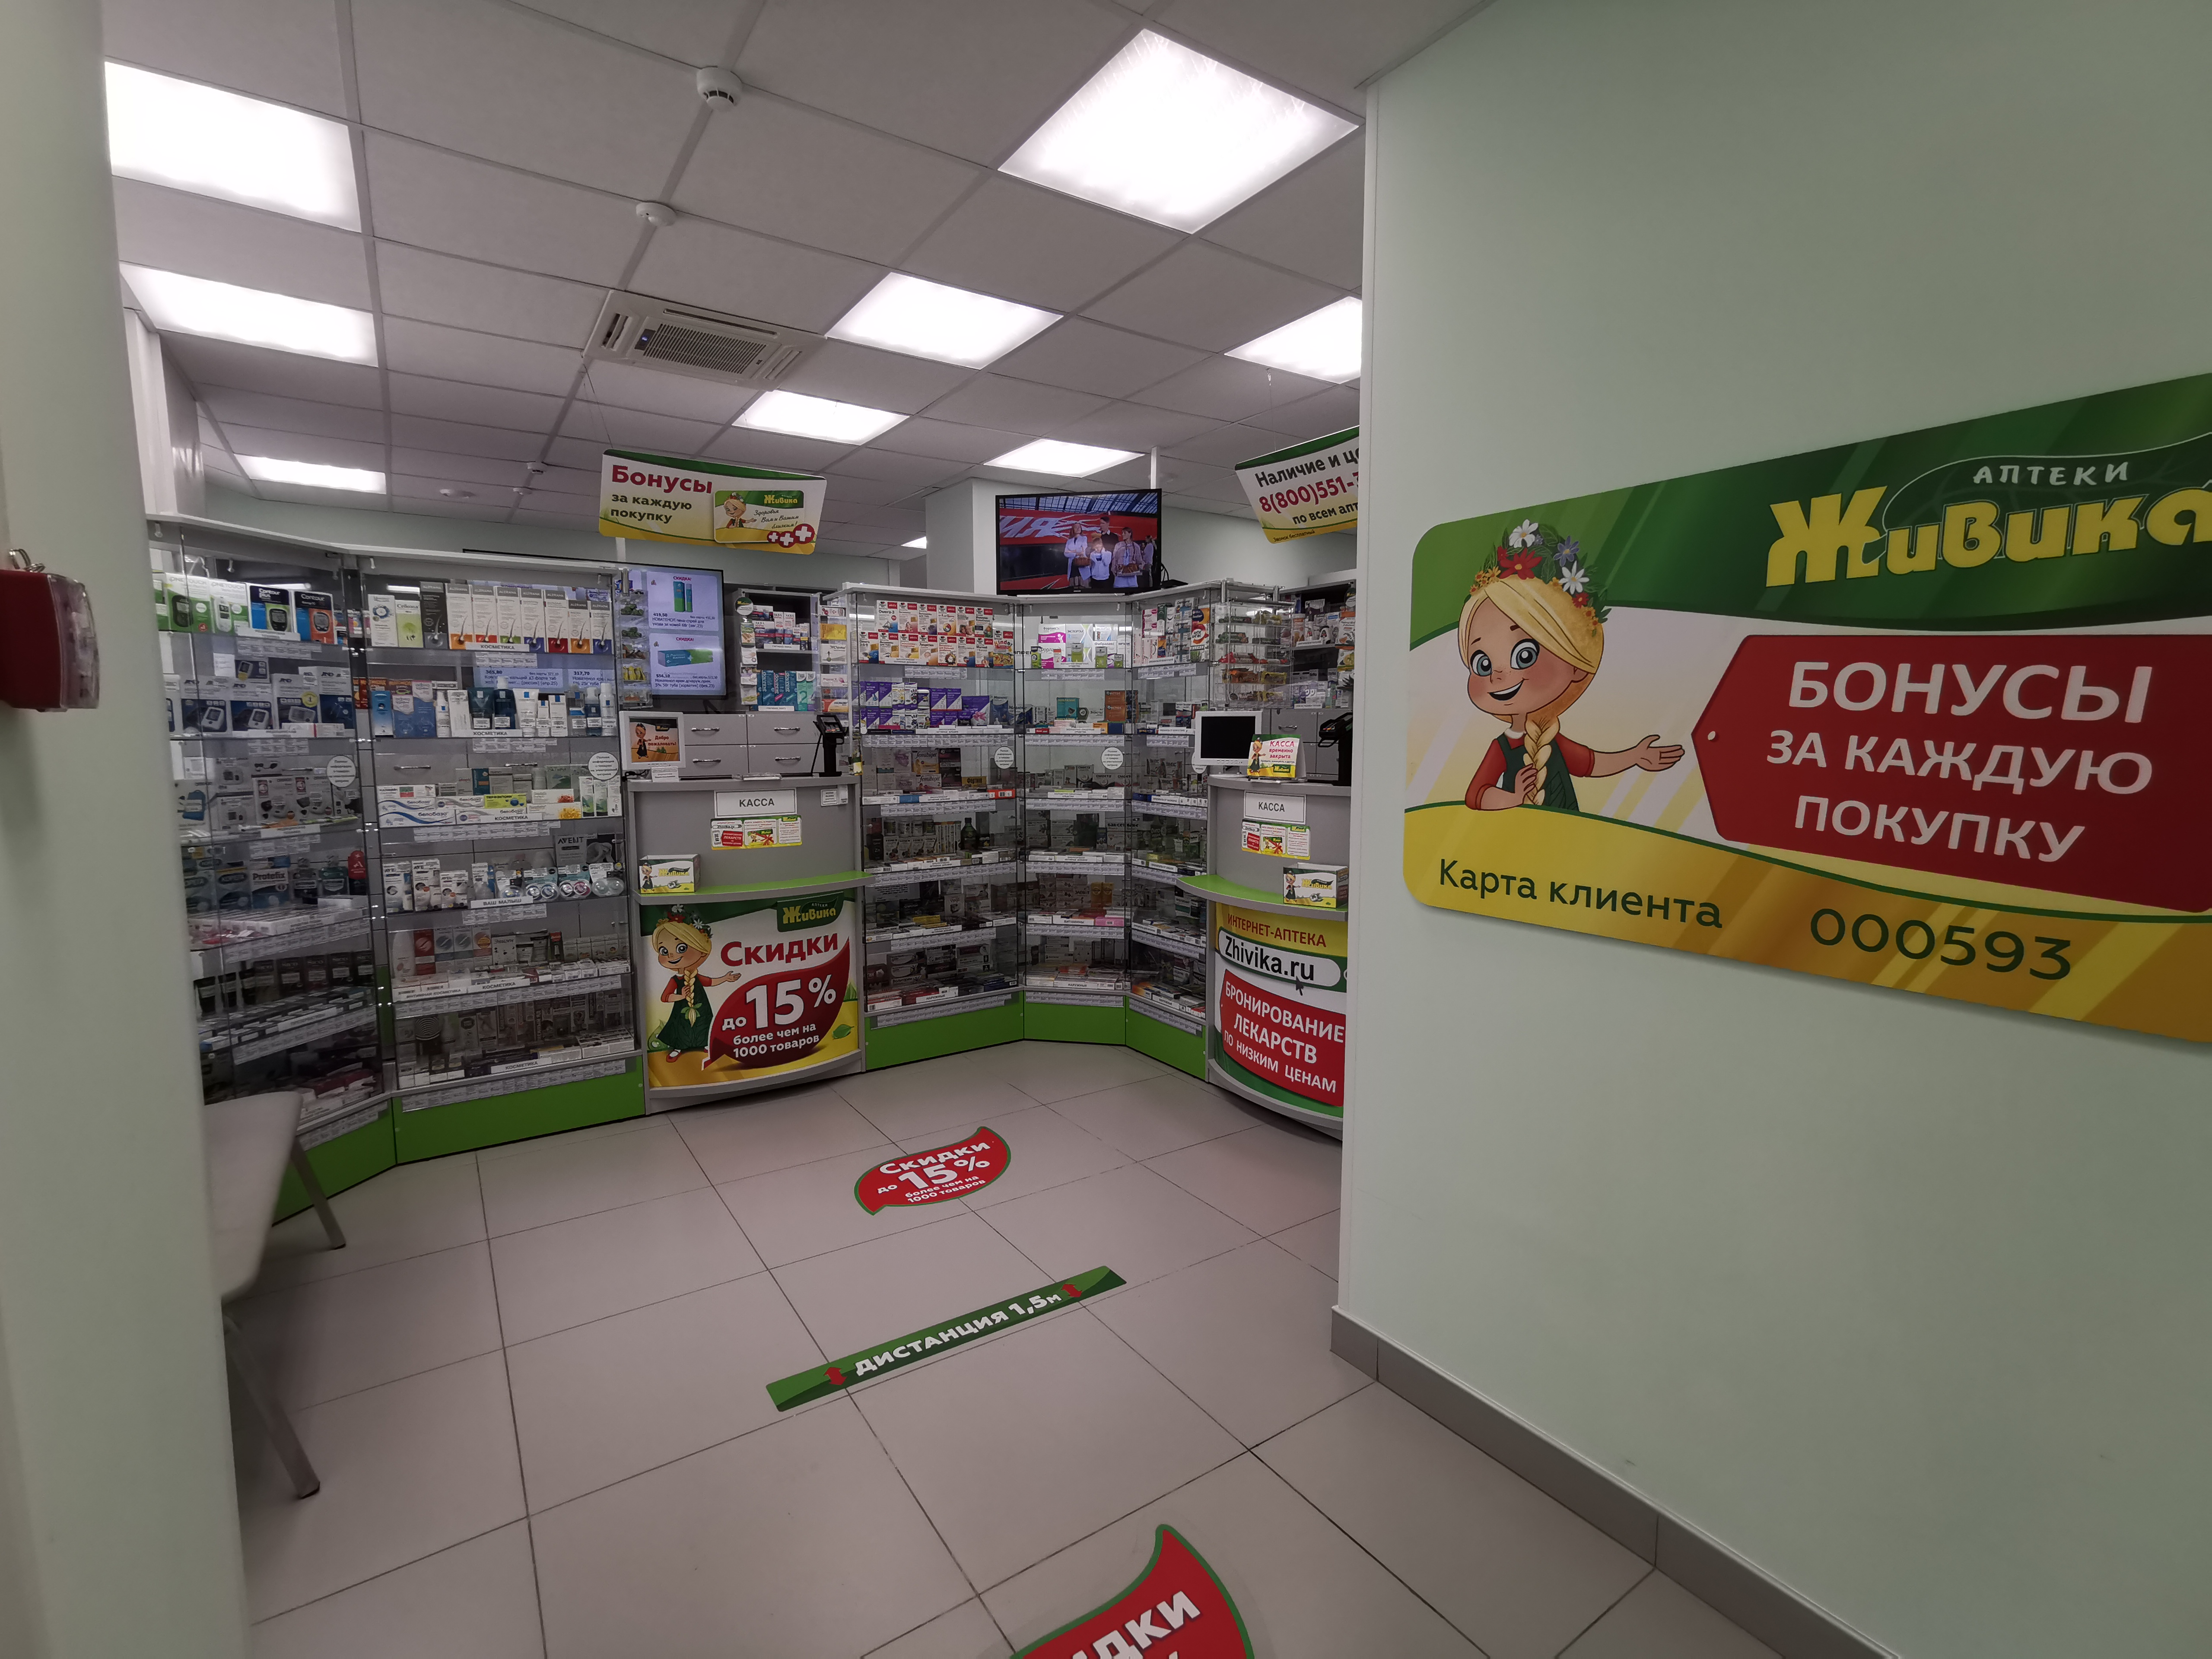 Аптека живика заказать лекарство через интернет аптеку